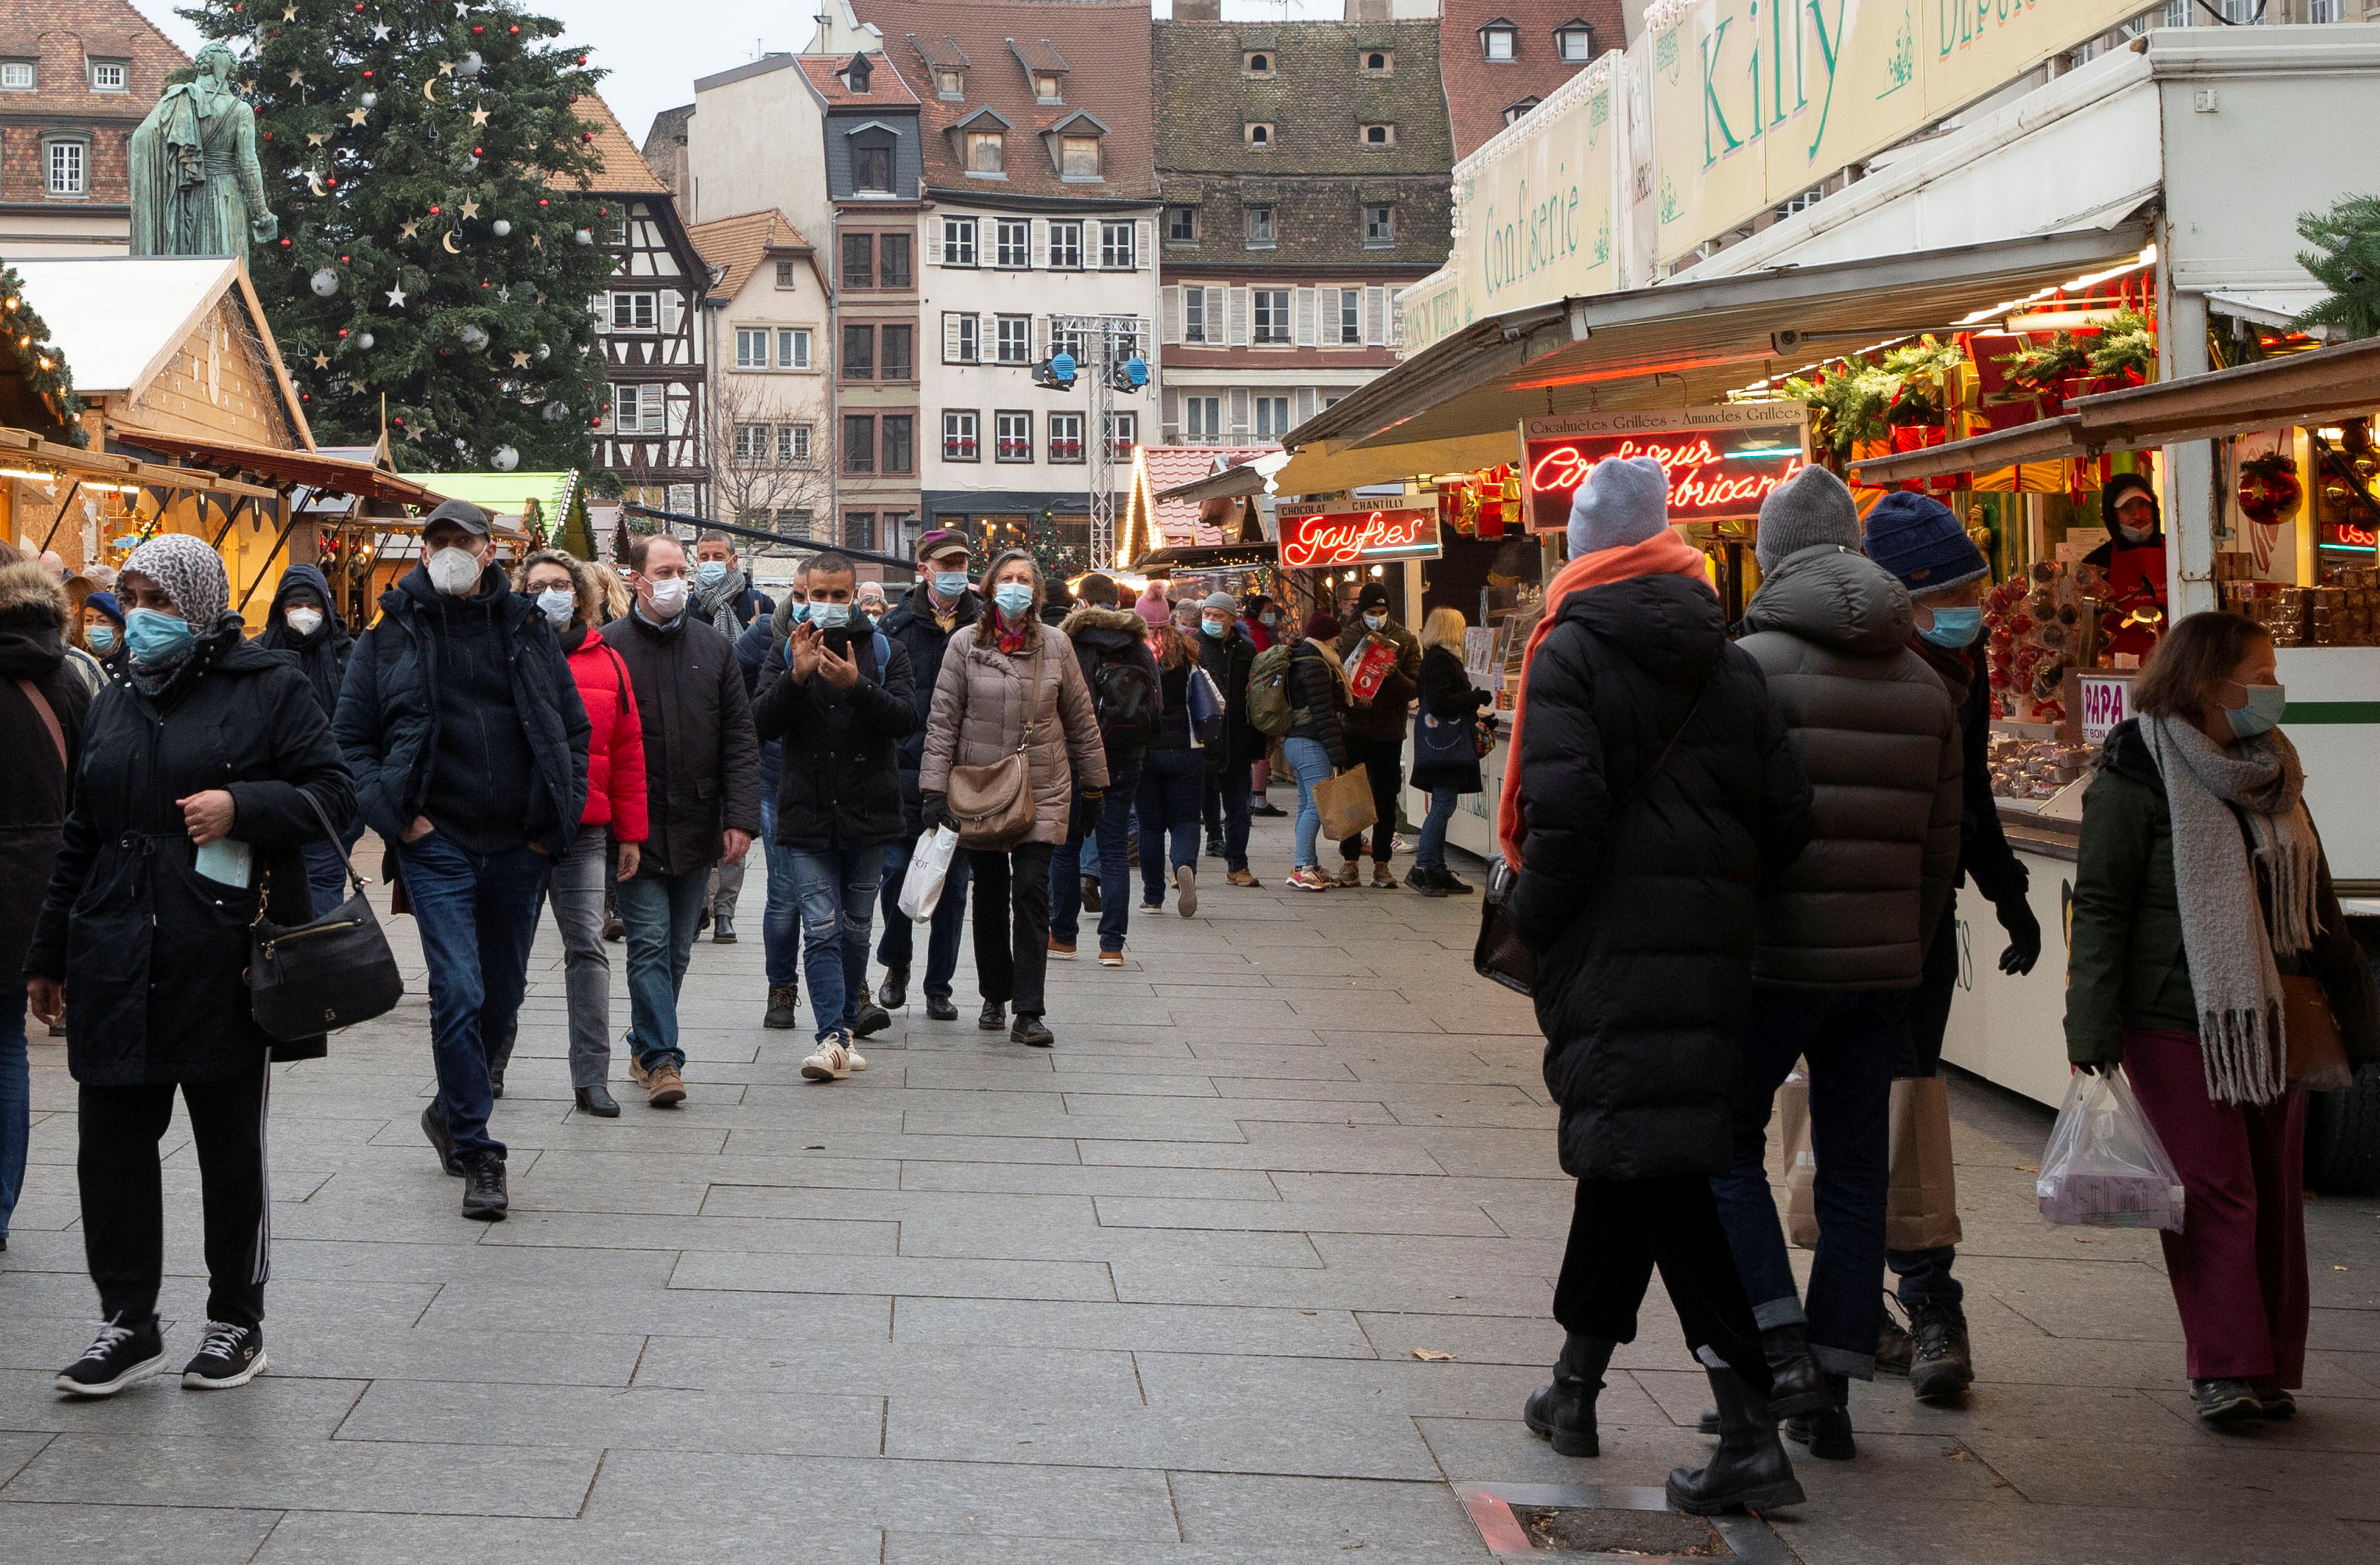 Les visiteurs portent des masques pour respecter les règles de protection COVID-19 lors d'un marché de Noël sur la place Kléber à Strasbourg, France, le 26 novembre 2021. REUTERS/Arnd Wiegmann